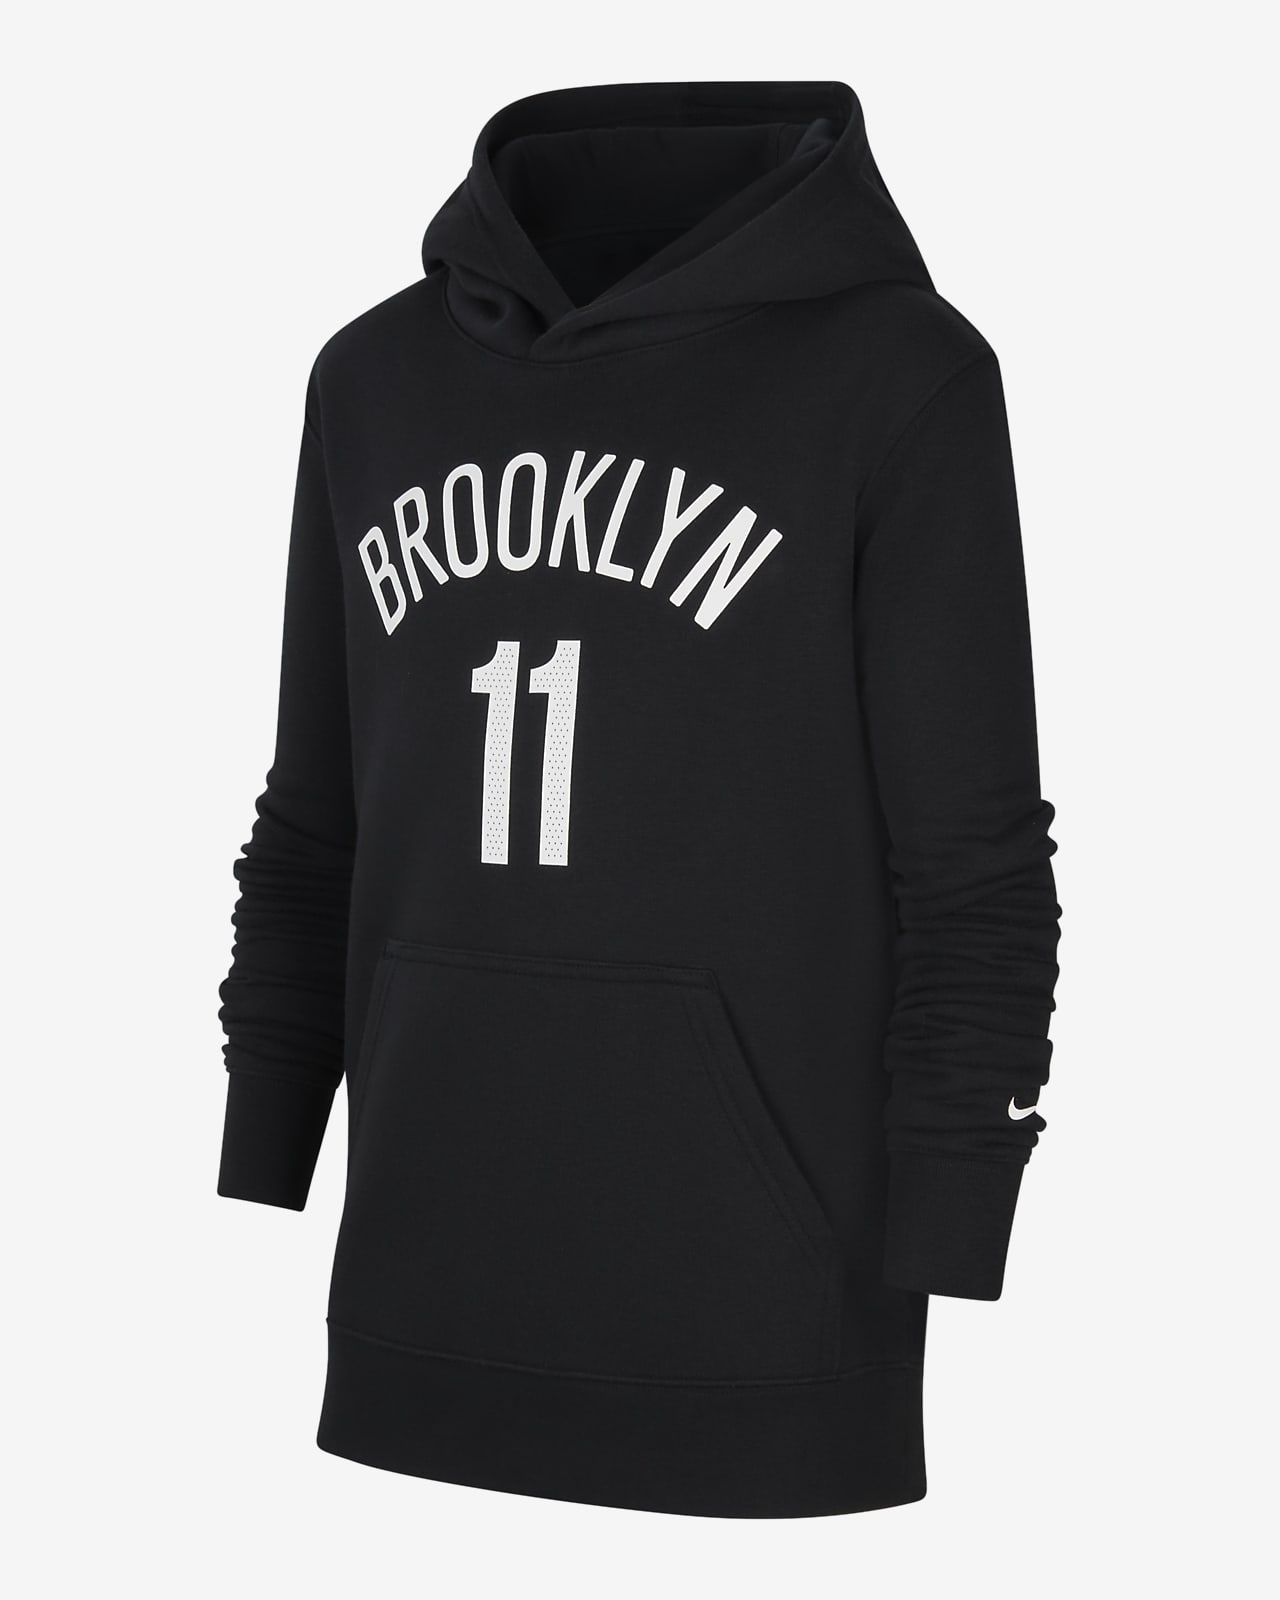 Flísová mikina Nike NBA Brooklyn Nets s kapucí pro větší děti